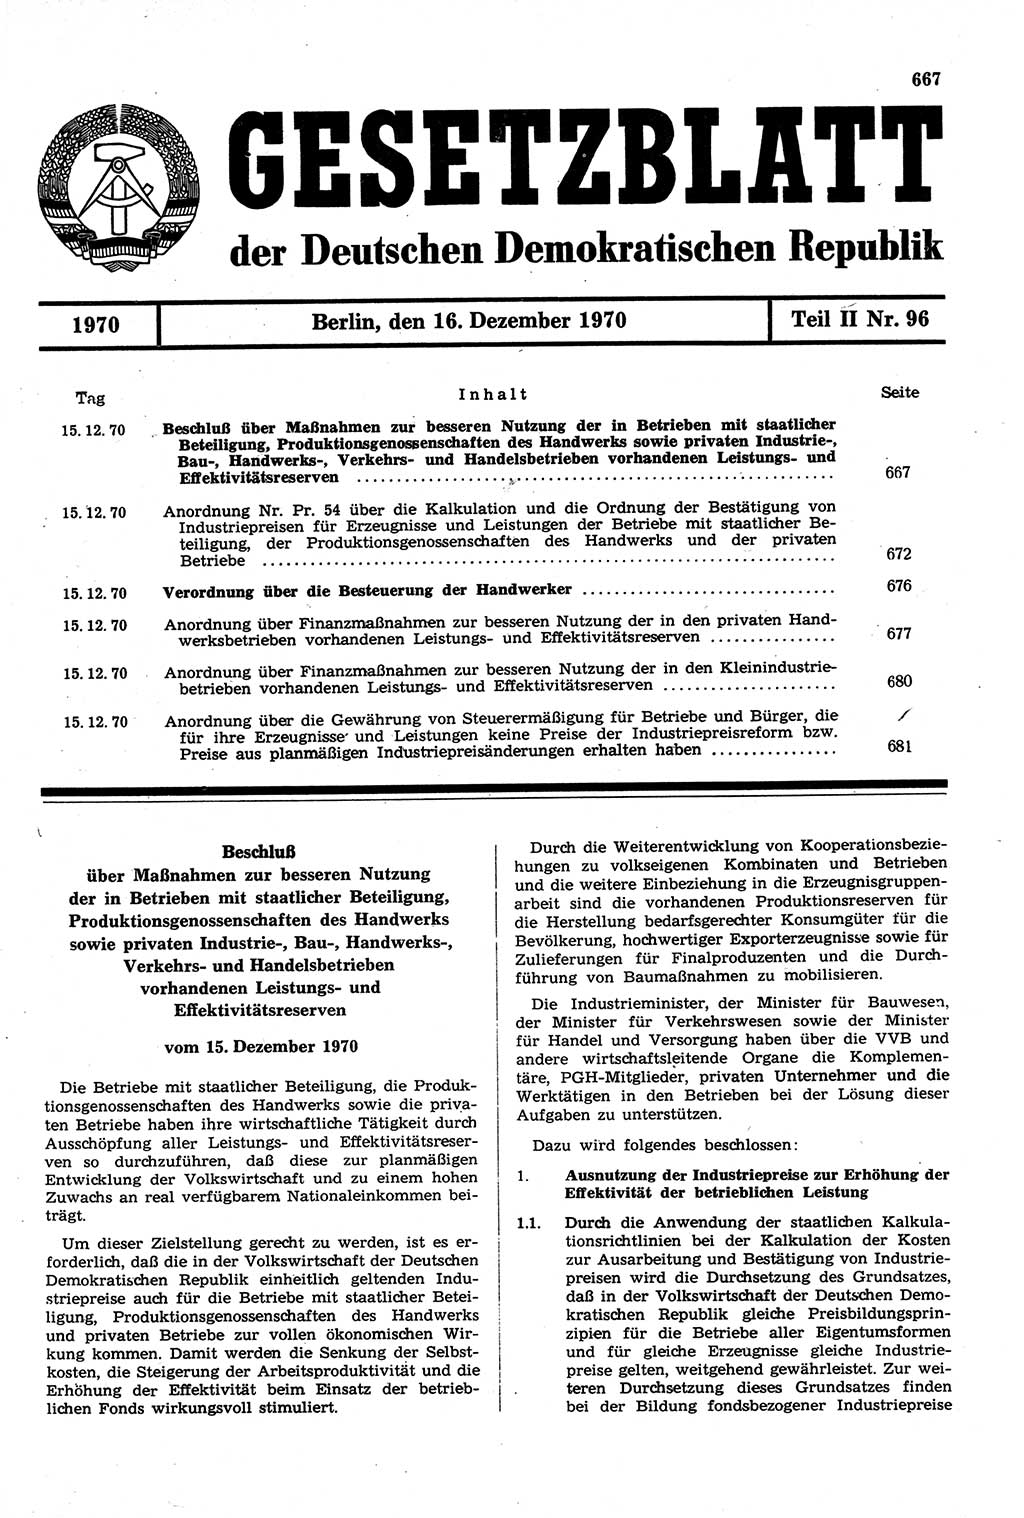 Gesetzblatt (GBl.) der Deutschen Demokratischen Republik (DDR) Teil ⅠⅠ 1970, Seite 667 (GBl. DDR ⅠⅠ 1970, S. 667)